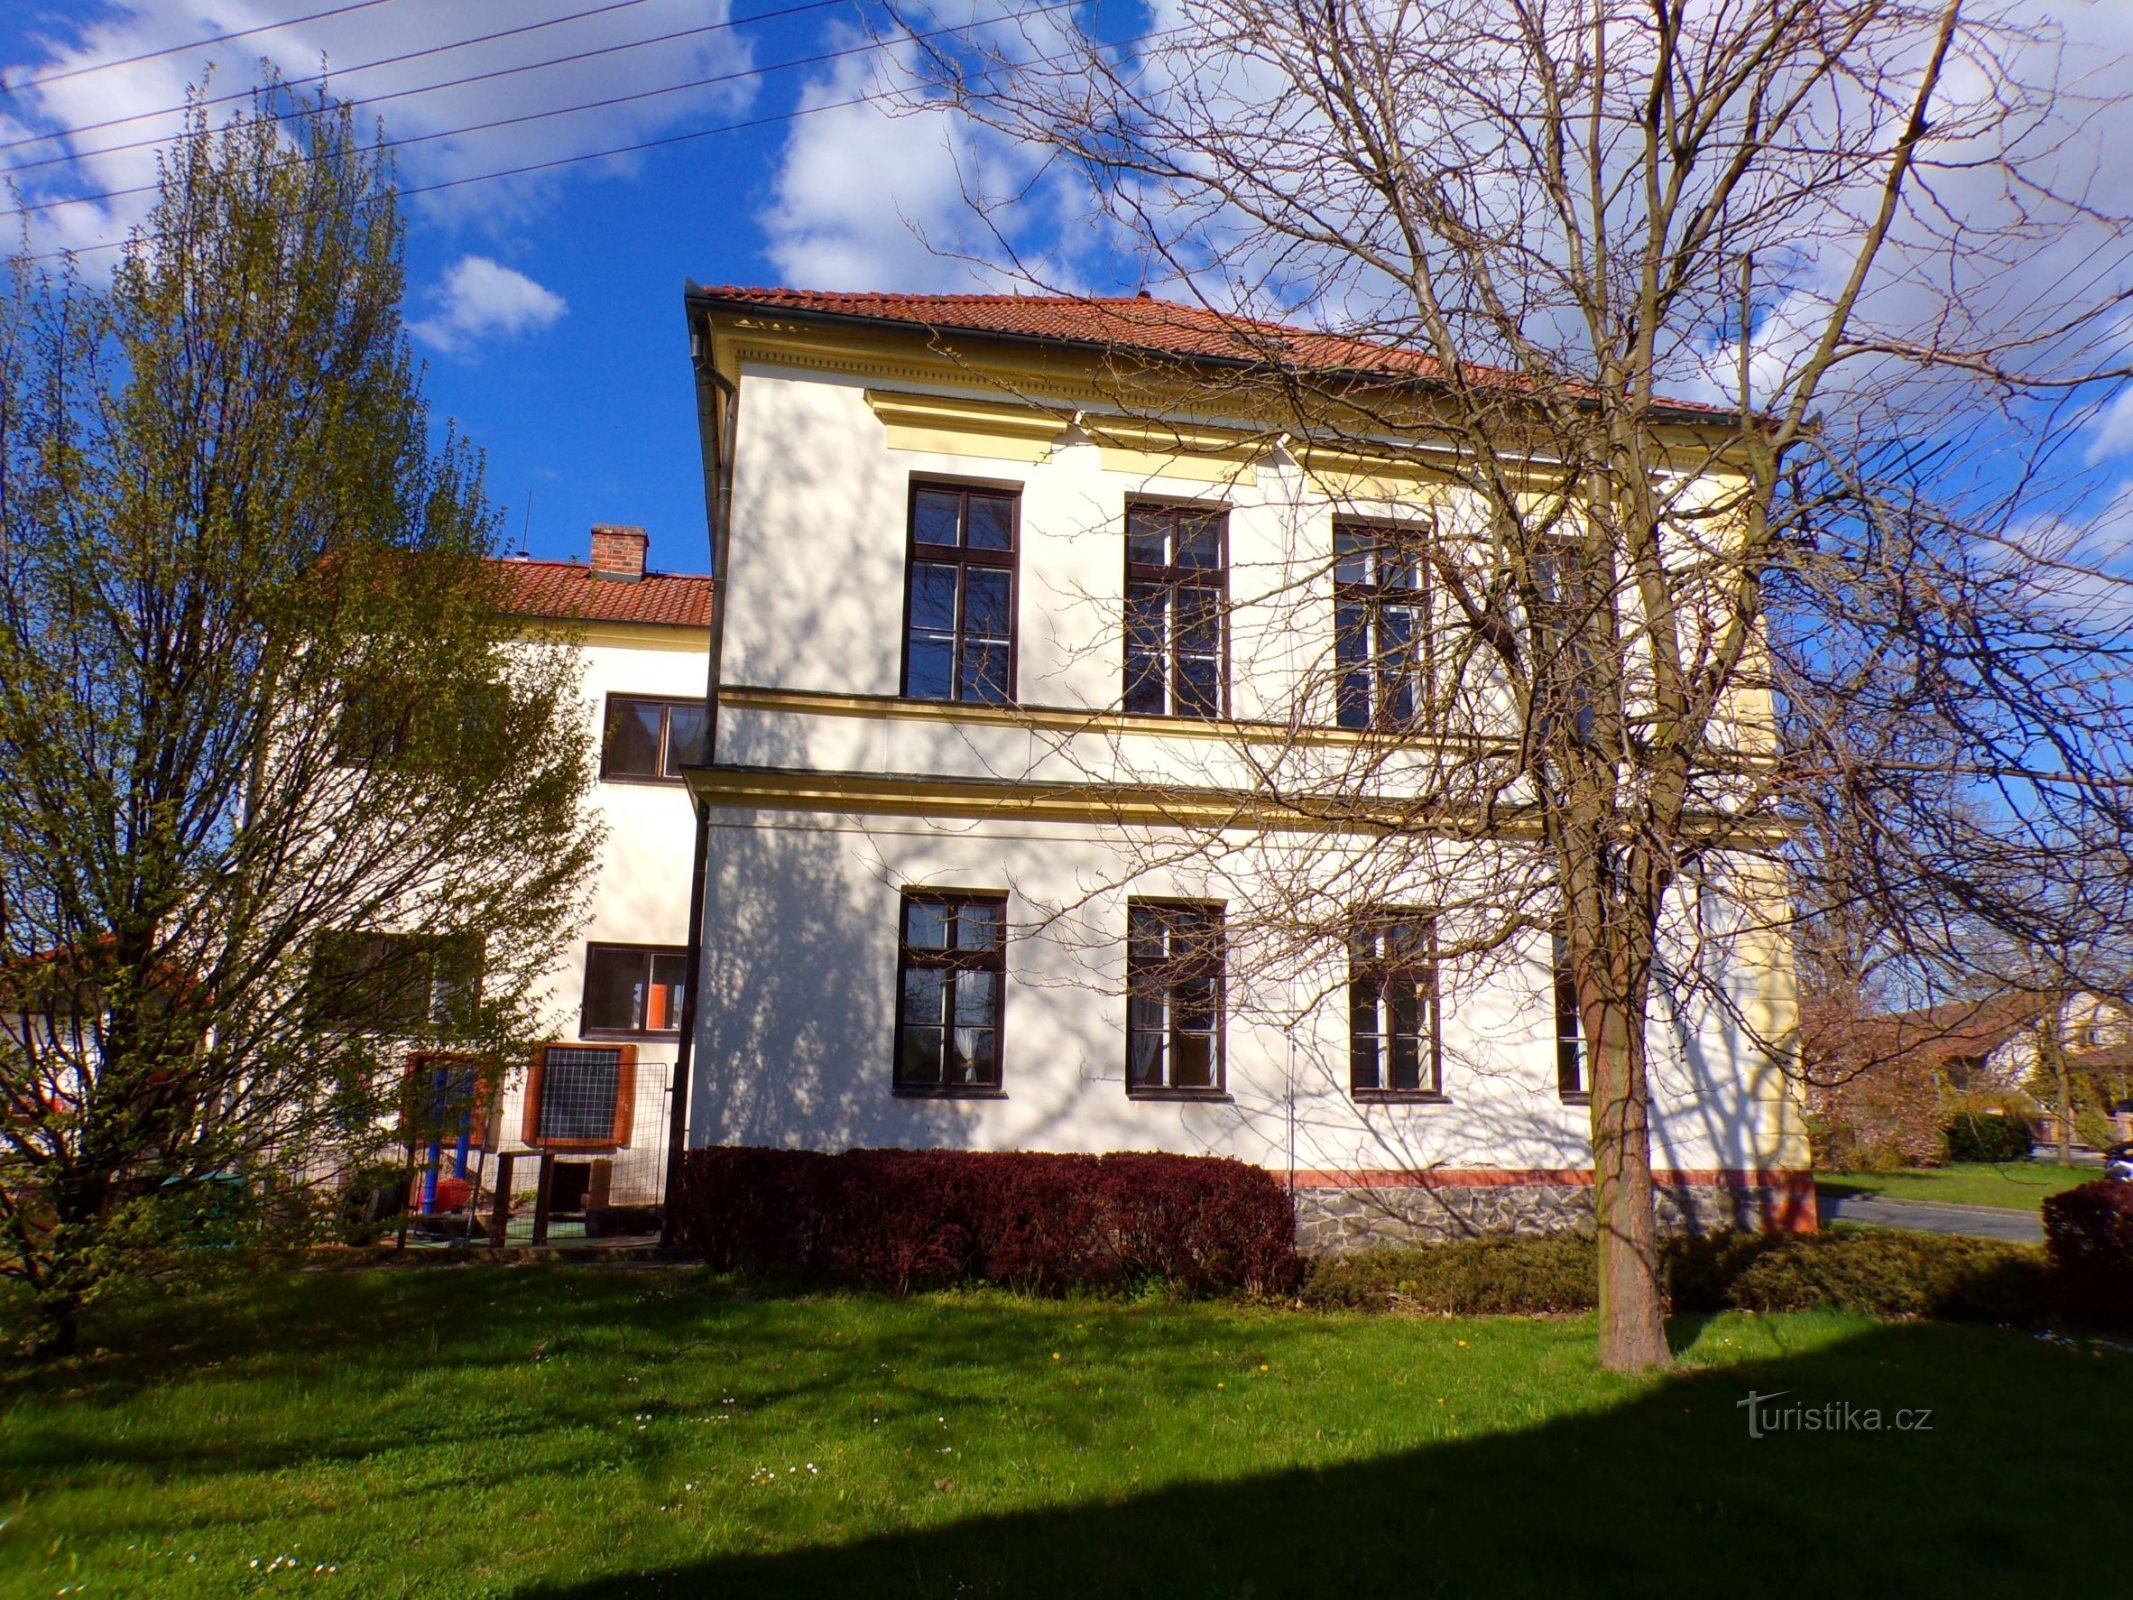 Skola i Rosice nad Labem (Pardubice, 23.4.2022-XNUMX-XNUMX)